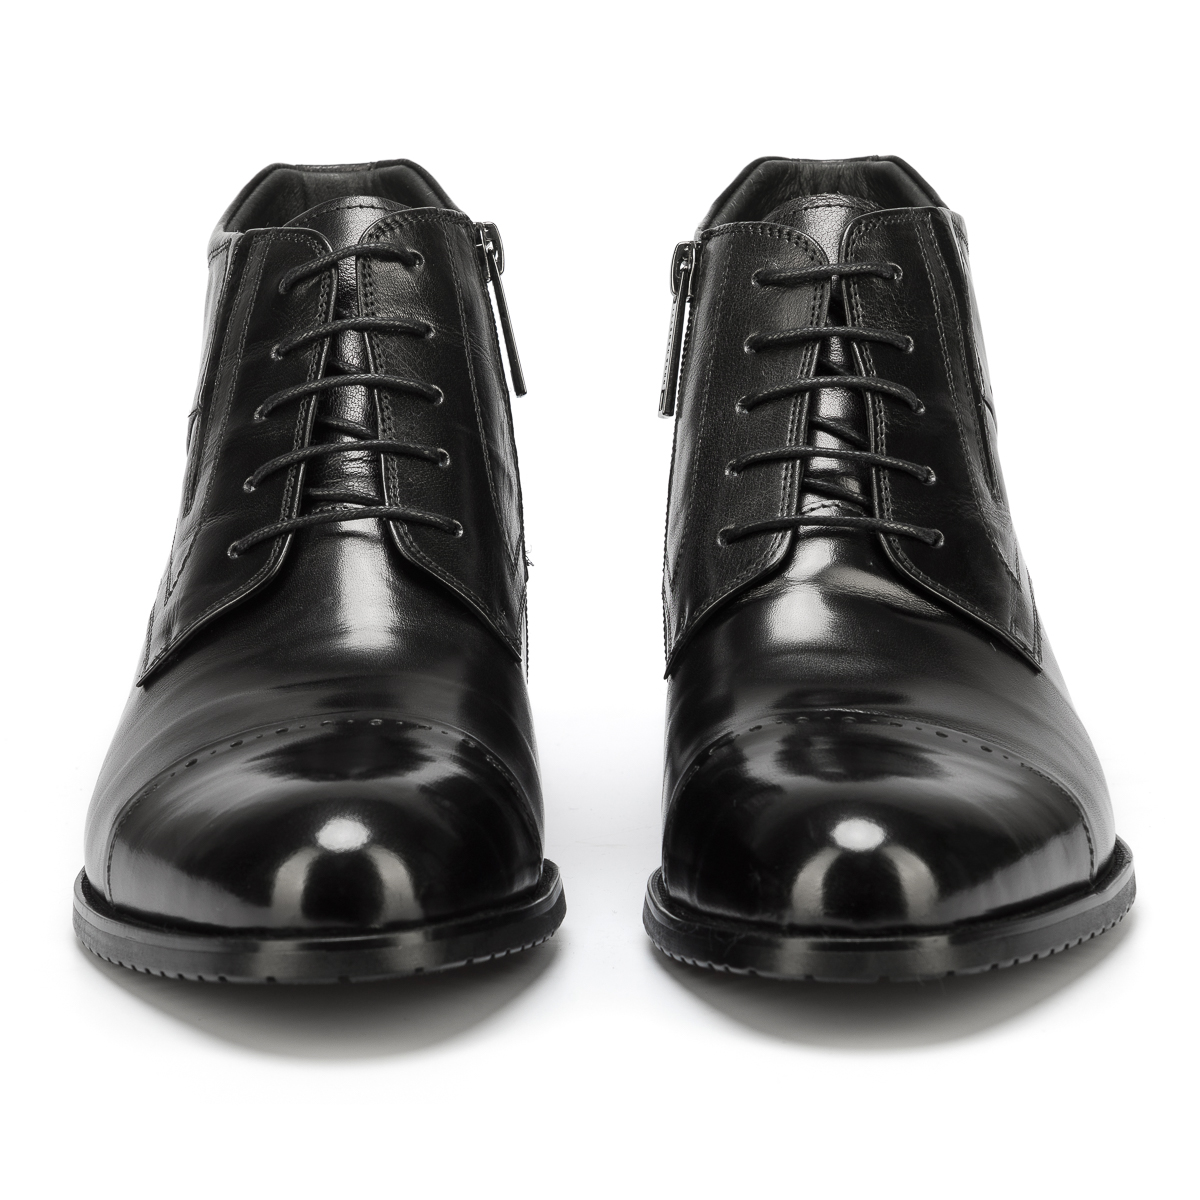 Картинка аяқ киім/ботинки Duca Daretti Интернет магазин Kimex + мужское + обувь + ботинки